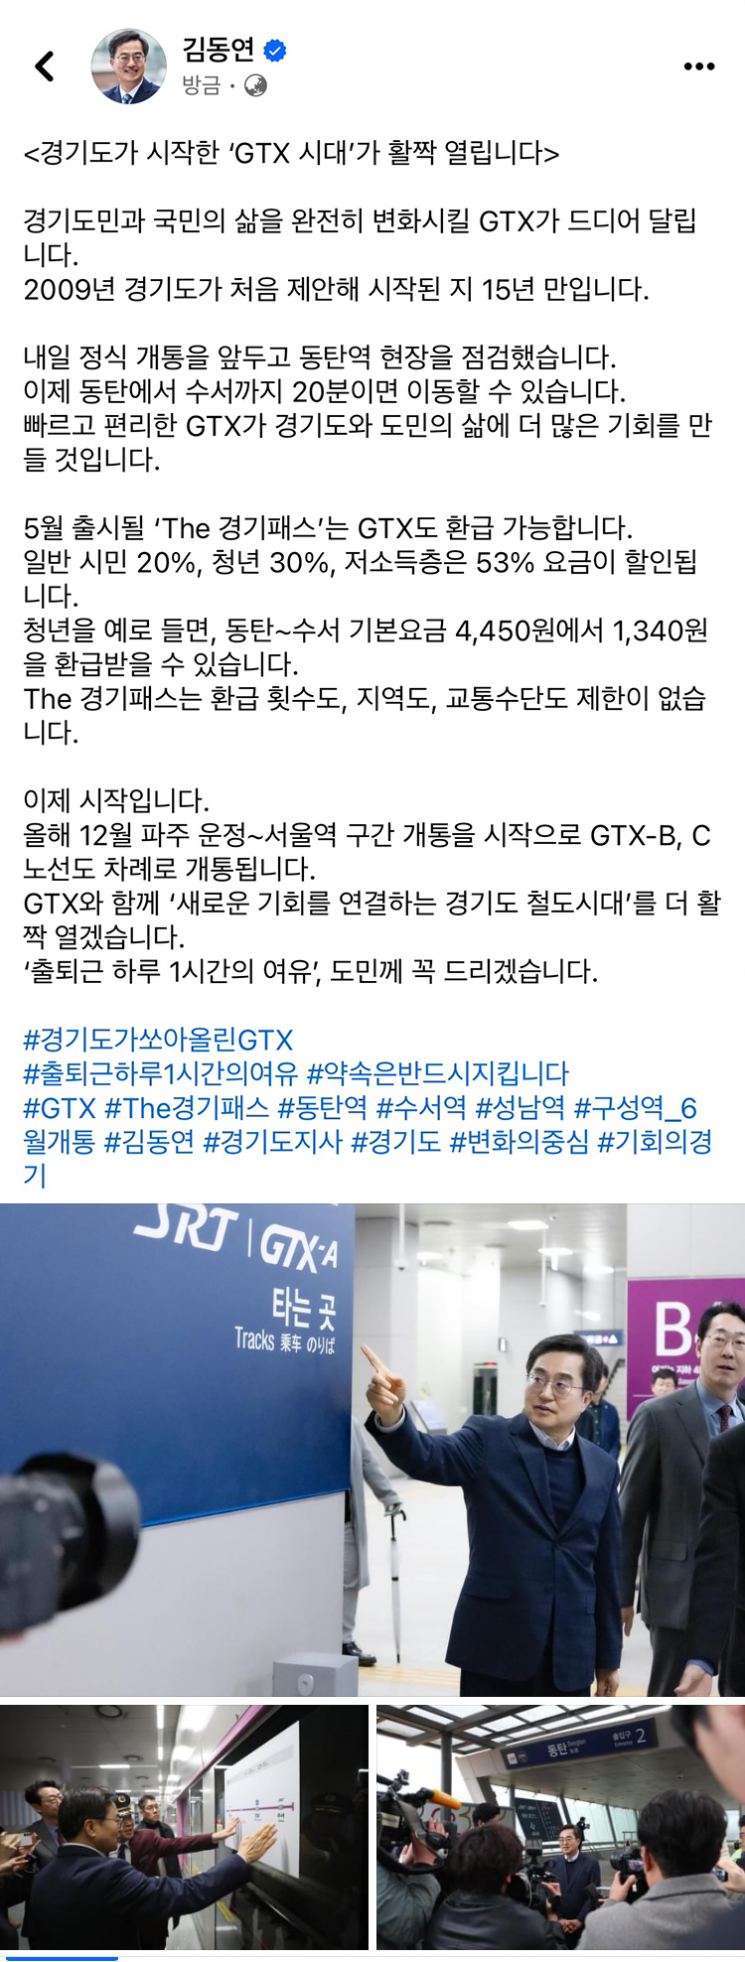 김동연 경기도지사가 29일 자신의 SNS에 올린 글과 사진